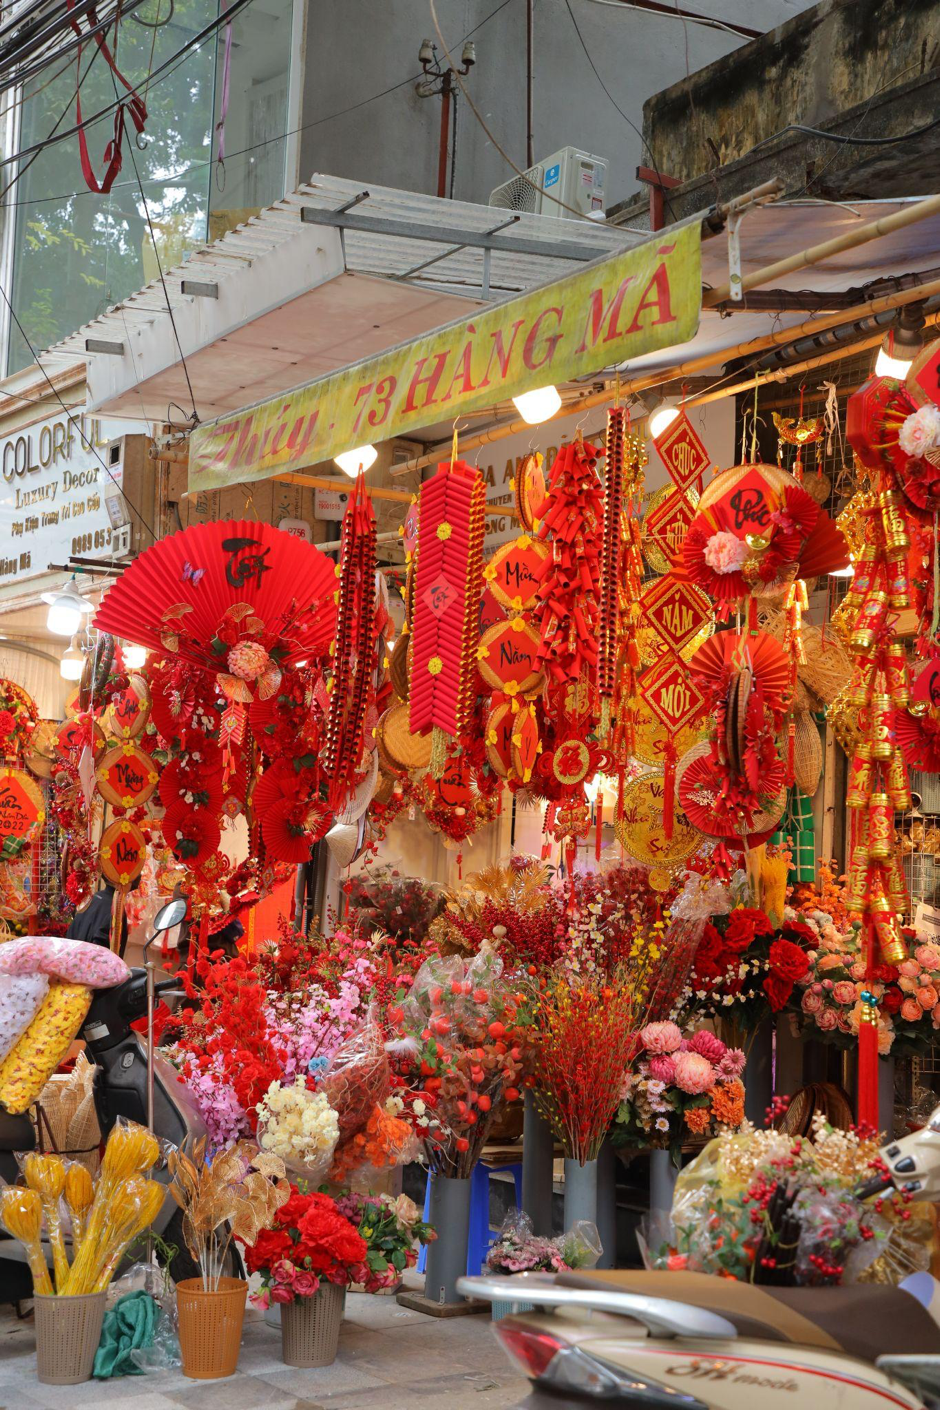 Hà Nội - trái tim của Việt Nam lúc nào cũng nhộn nhịp và đầy năng lượng. Đến dịp Tết, bạn sẽ được chiêm ngưỡng những hình ảnh đẹp của một Hà Nội đón Tết rực rỡ, lung linh với ánh đèn và những bông hoa tươi đầy màu sắc.